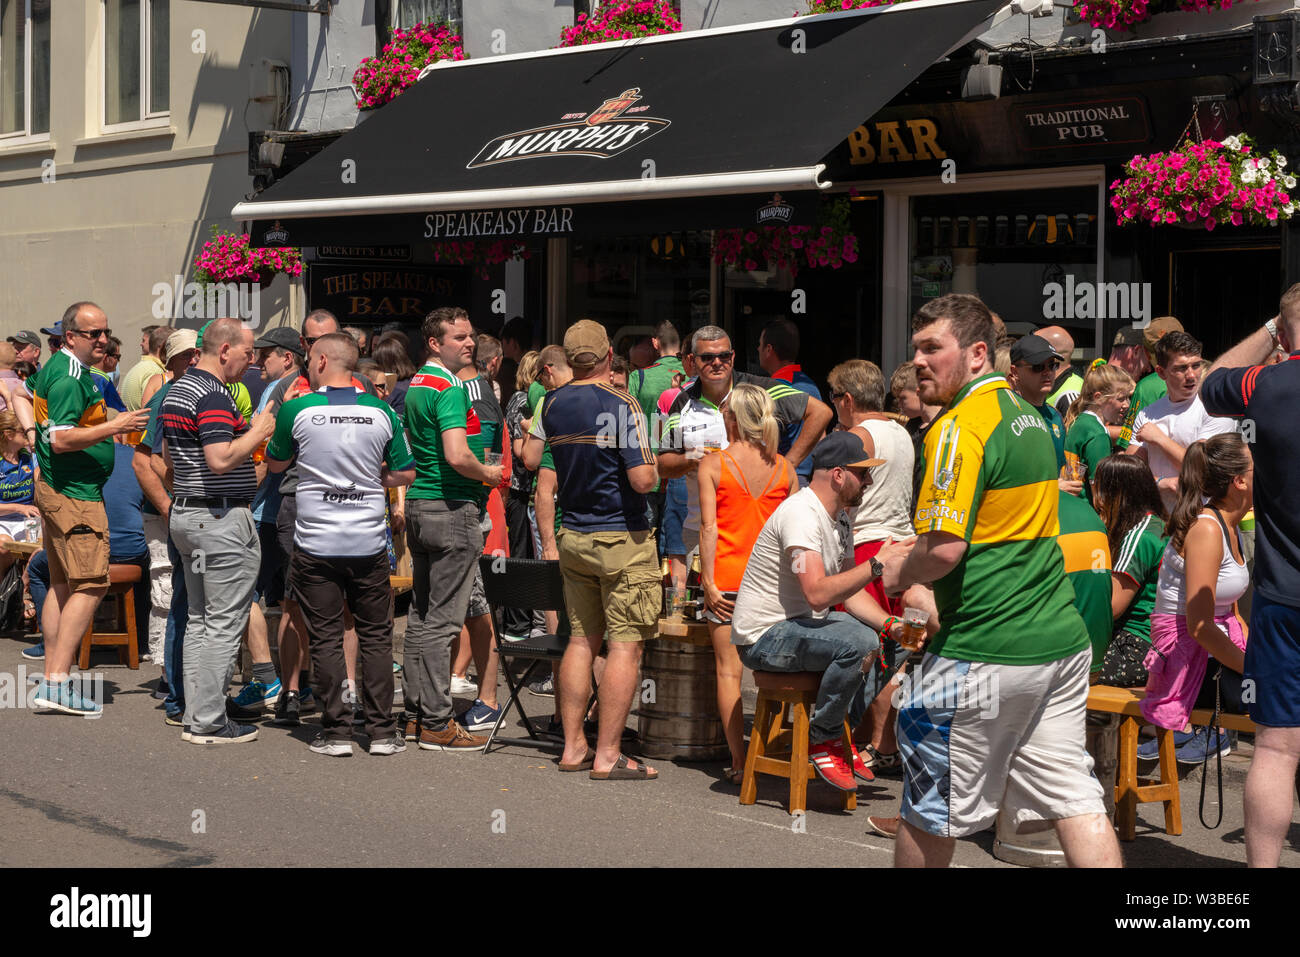 Spieltag in Killarney, County Kerry, Irland. Fans gälischer Fußballfans an einem Spieltag in den Killarney Streets genießen die Sonne vor der Speakeasy Bar in der High Street Stockfoto